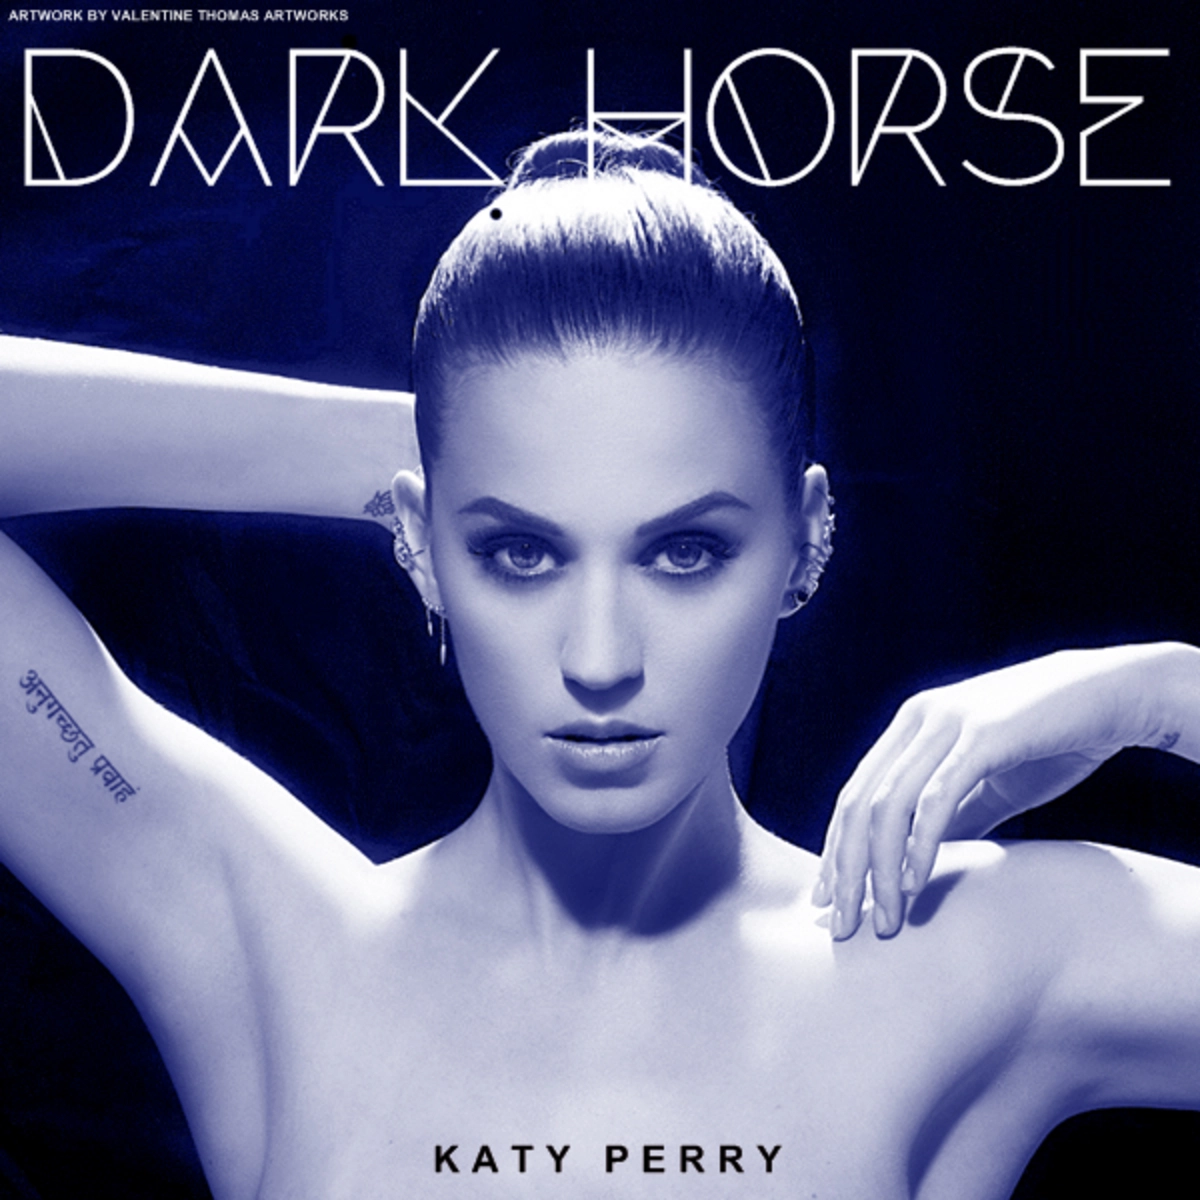 BeatSaber - Katy Perry - Dark Horse